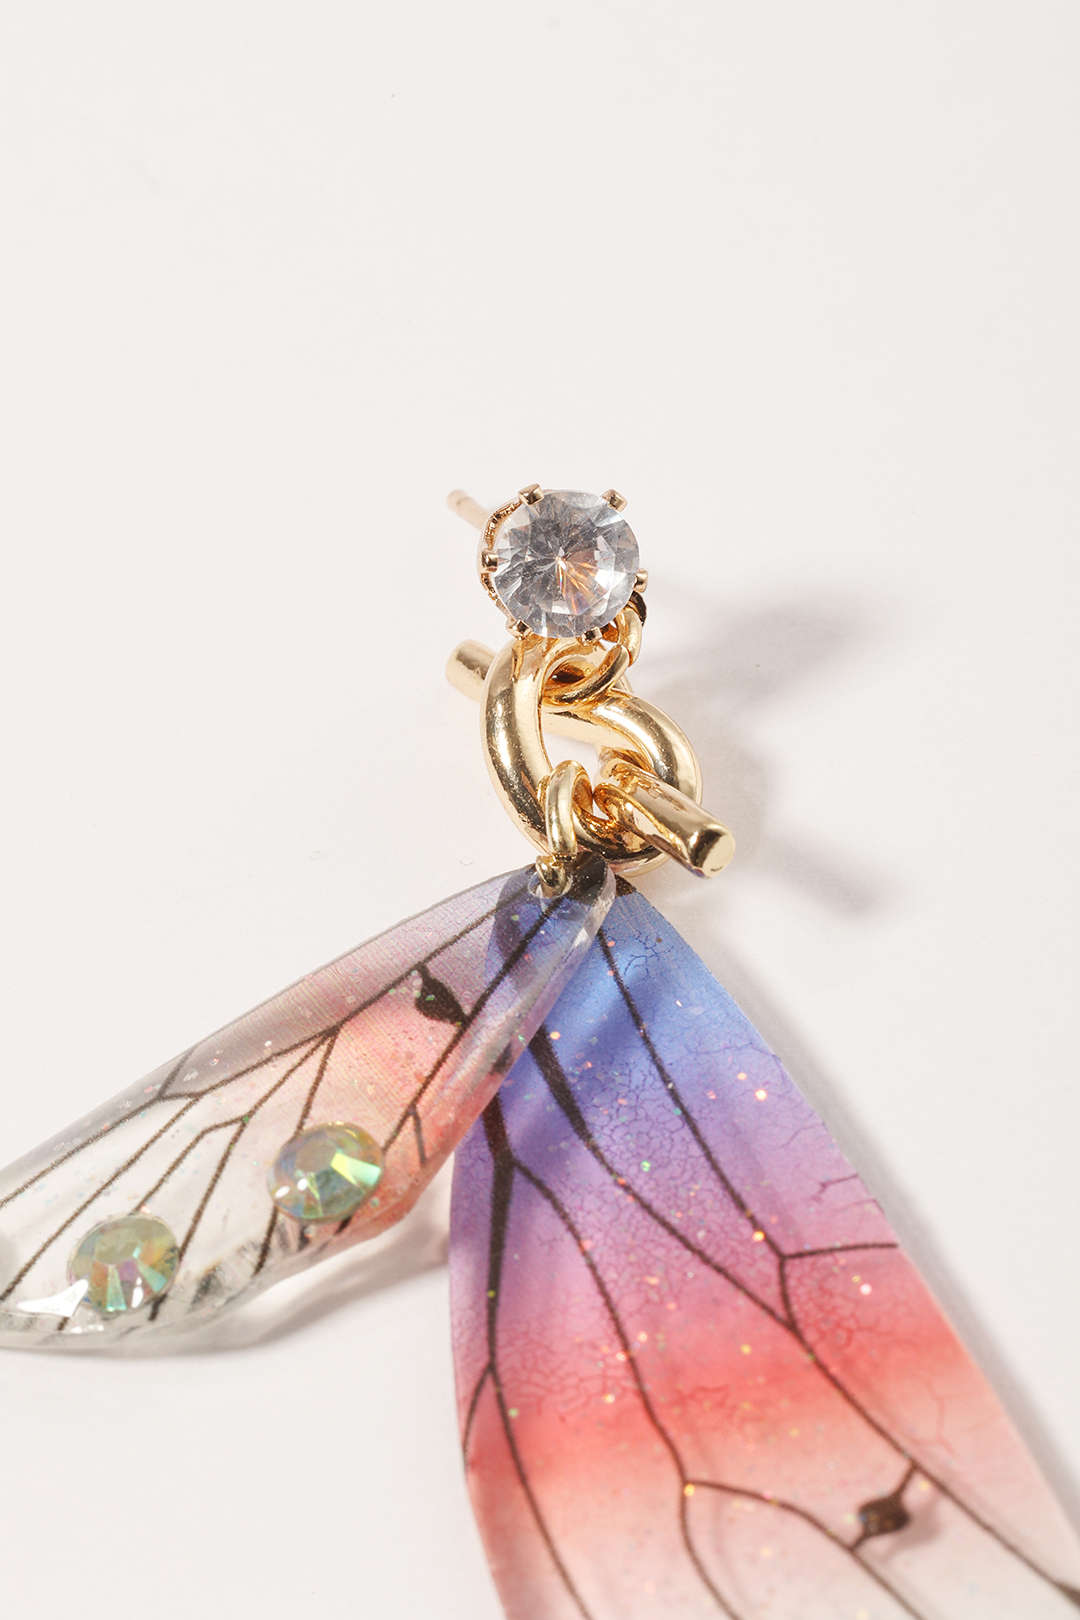 Colorful Butterfly Earrings